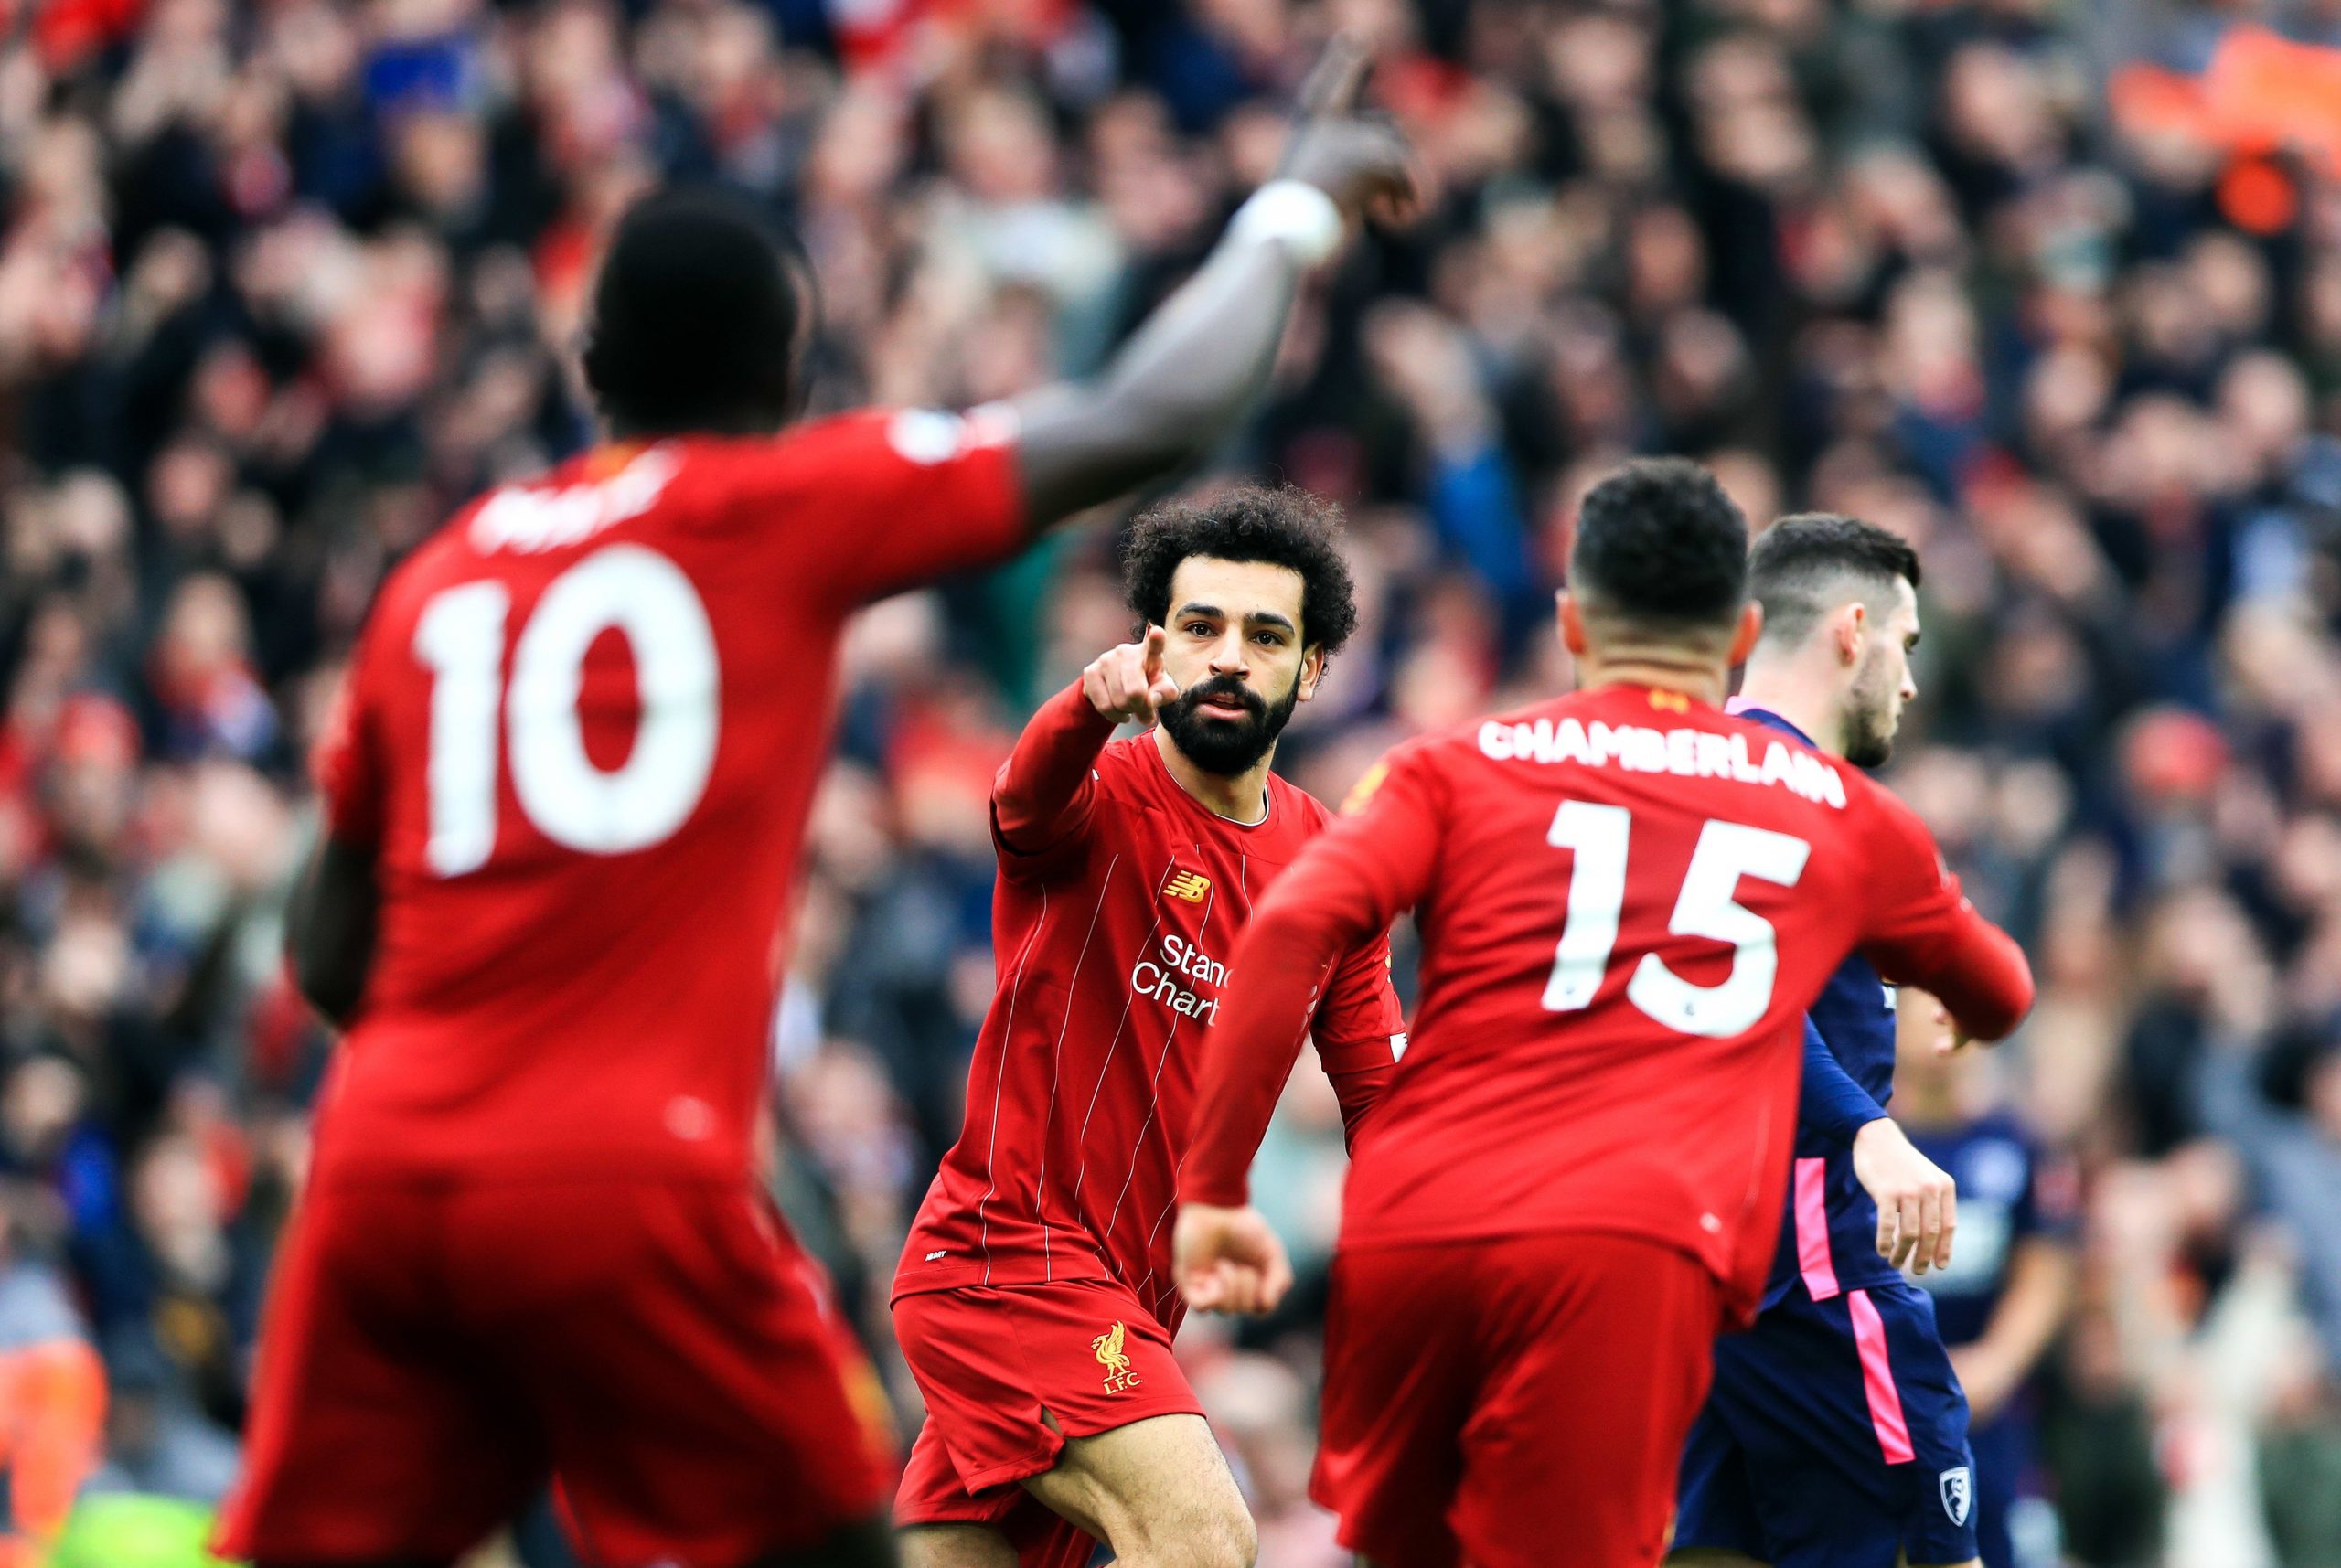 Steven Gérard 2e, Mo Salah 4e…le Top 10 des meilleurs buteurs de Liverpool en Premier League